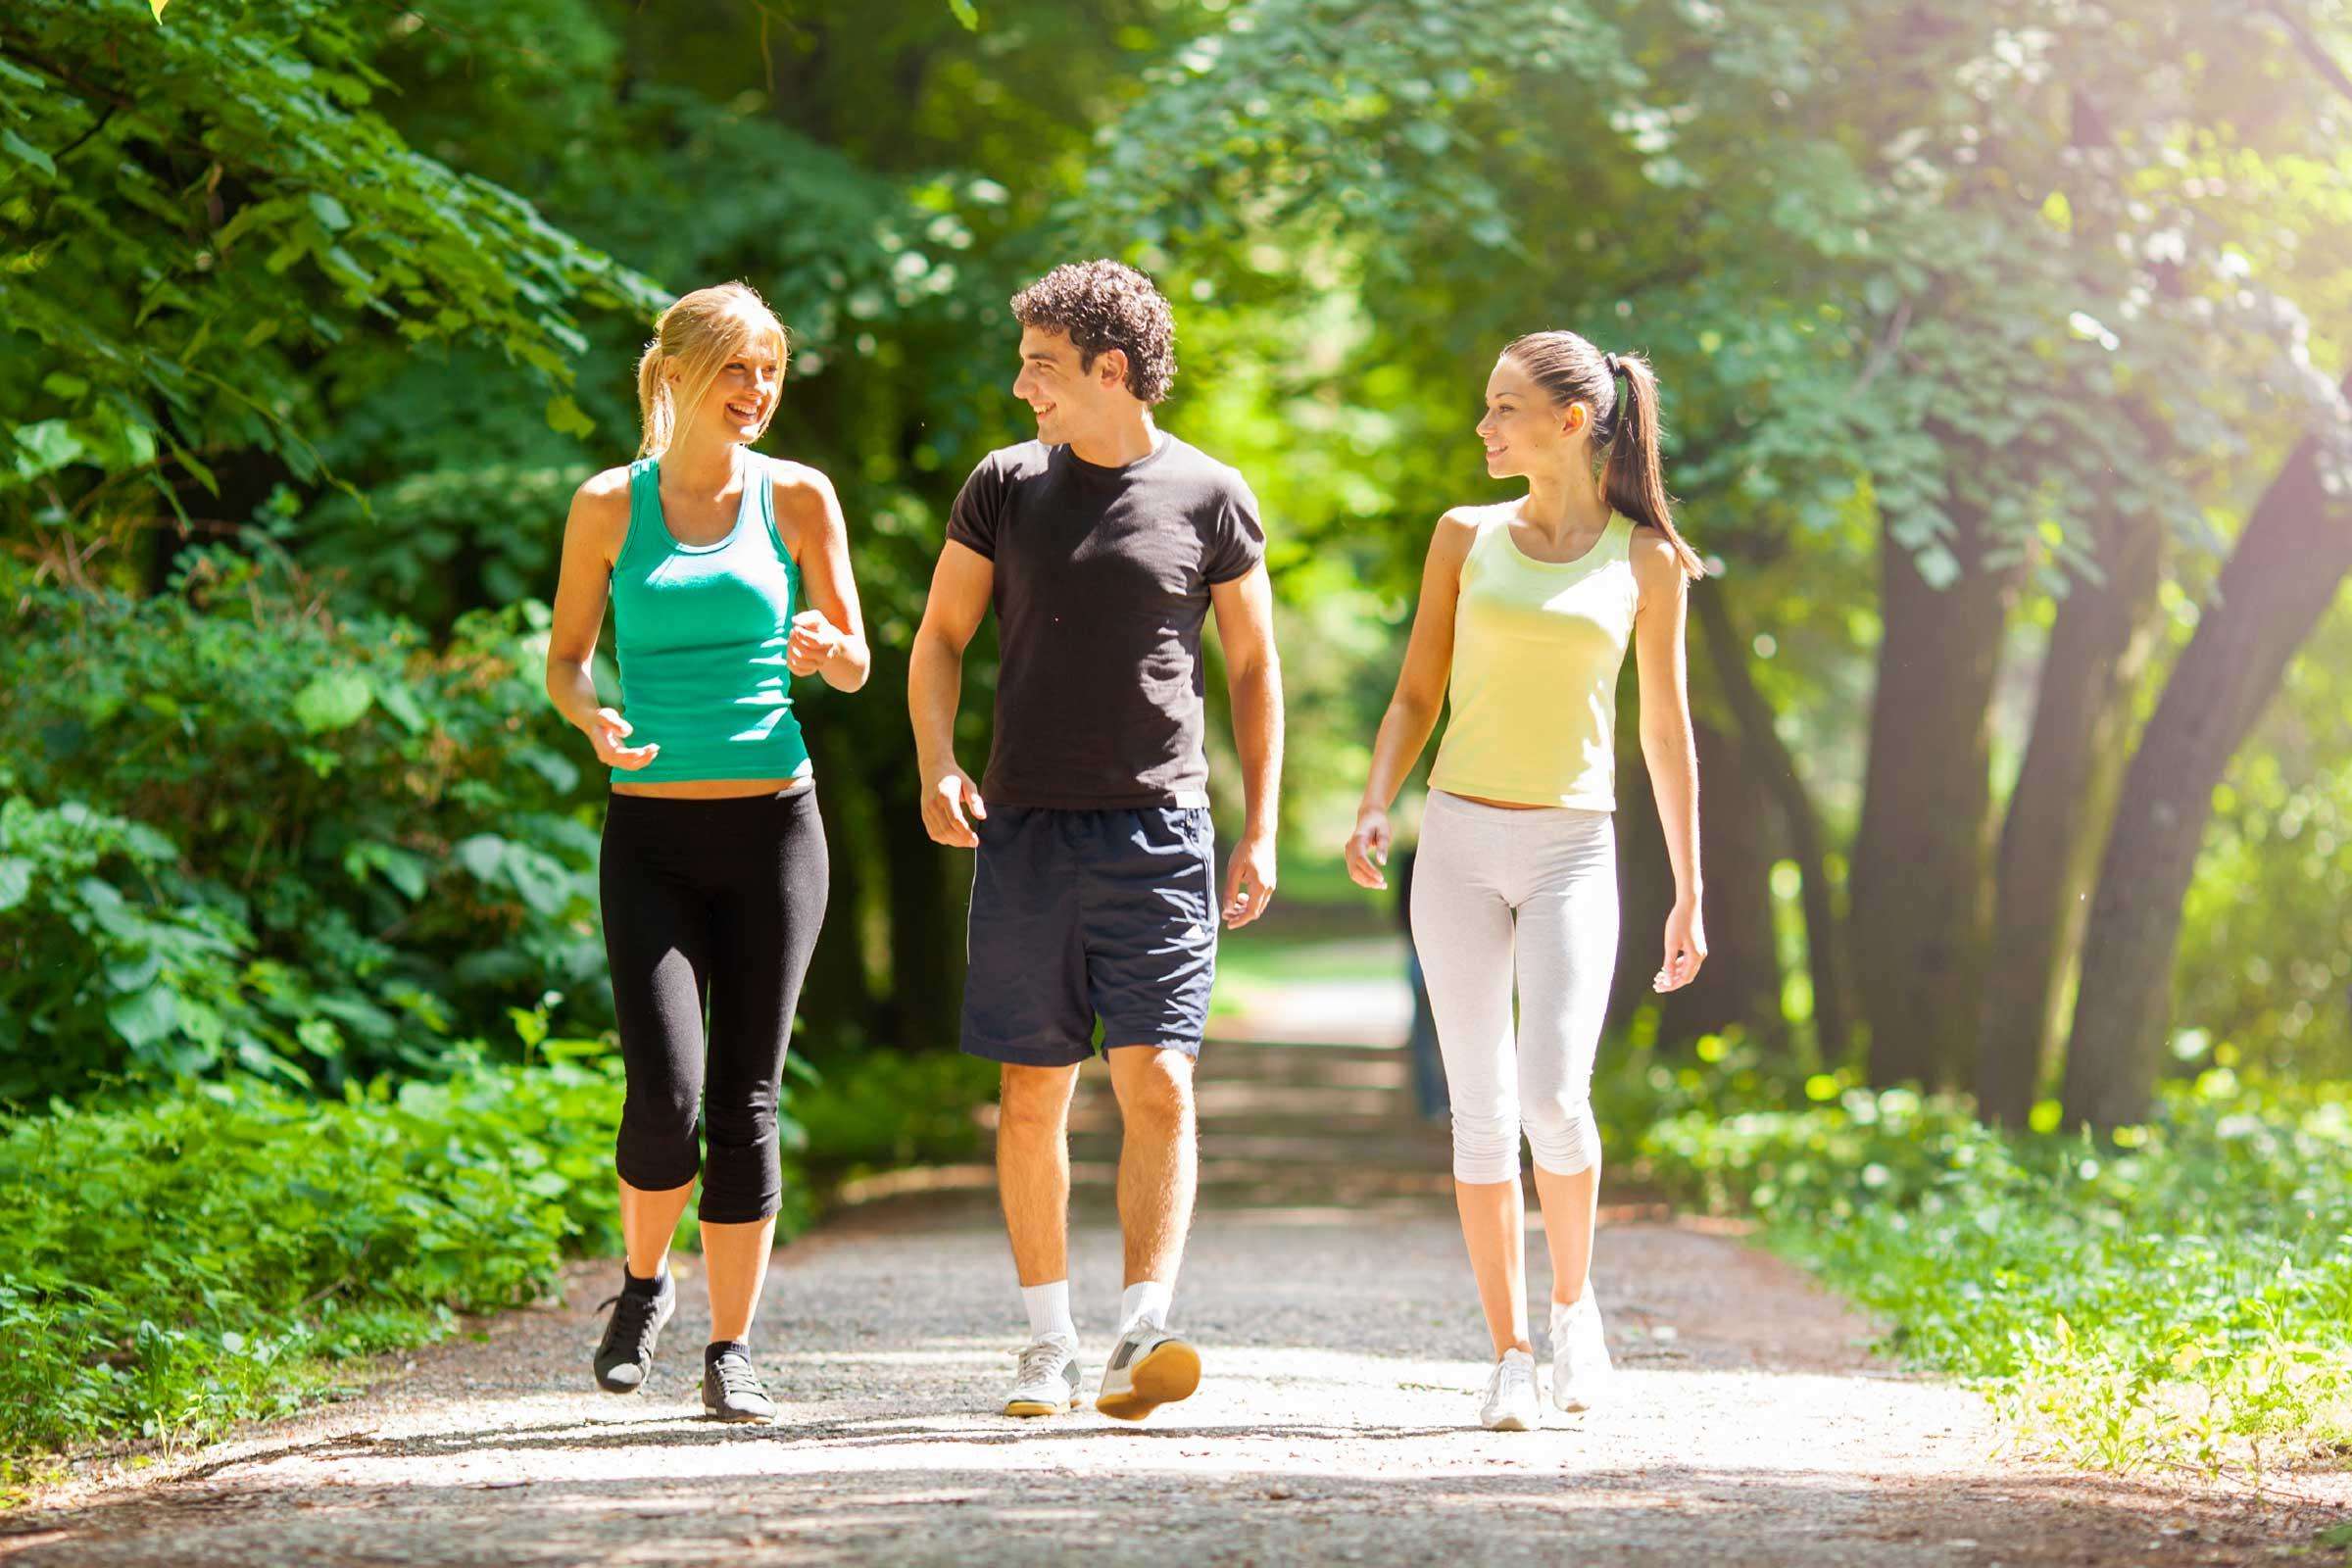 रोज़ाना केवल तीस मिनट पैदल चलना आपको रख सकता है स्वस्थ, जानिए कैसे?